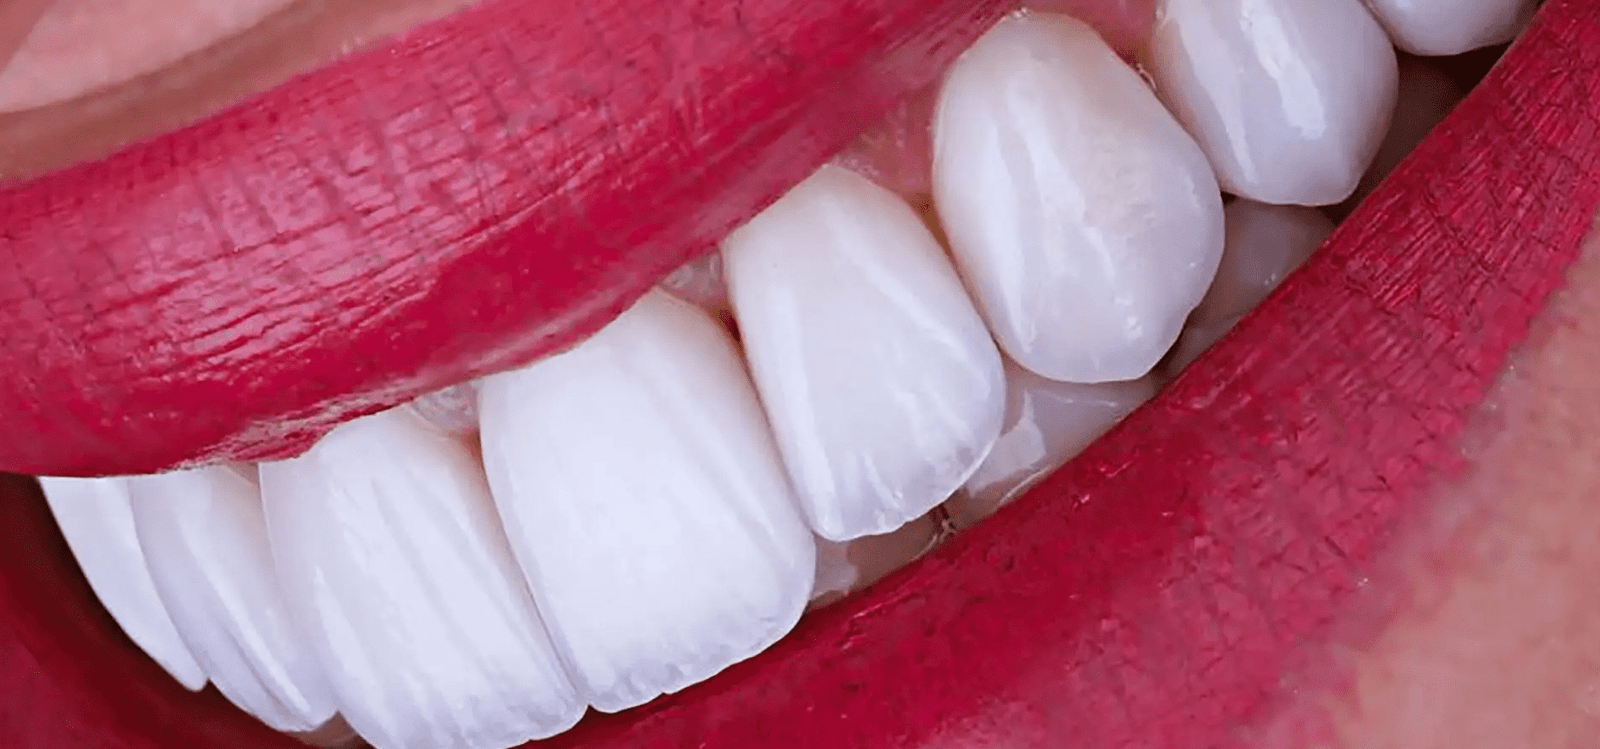 Trattamenti odontoiatrici: tipi, durata e sbiancamento dei denti